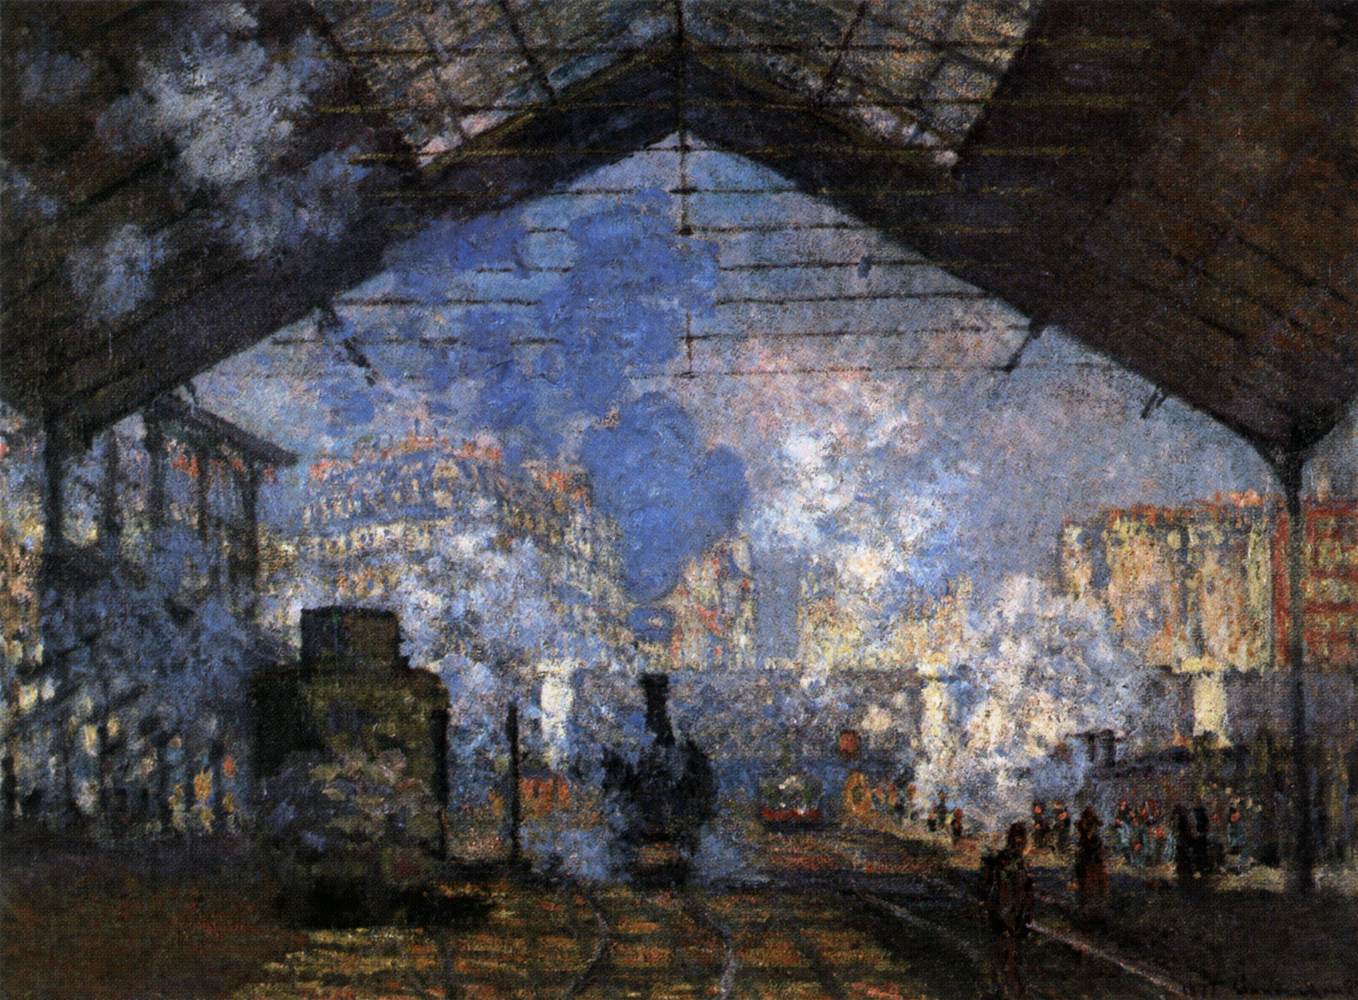 Saint-Lazare Garı by Claude Monet - 1877 - 76 x 104 cm Musée d'Orsay